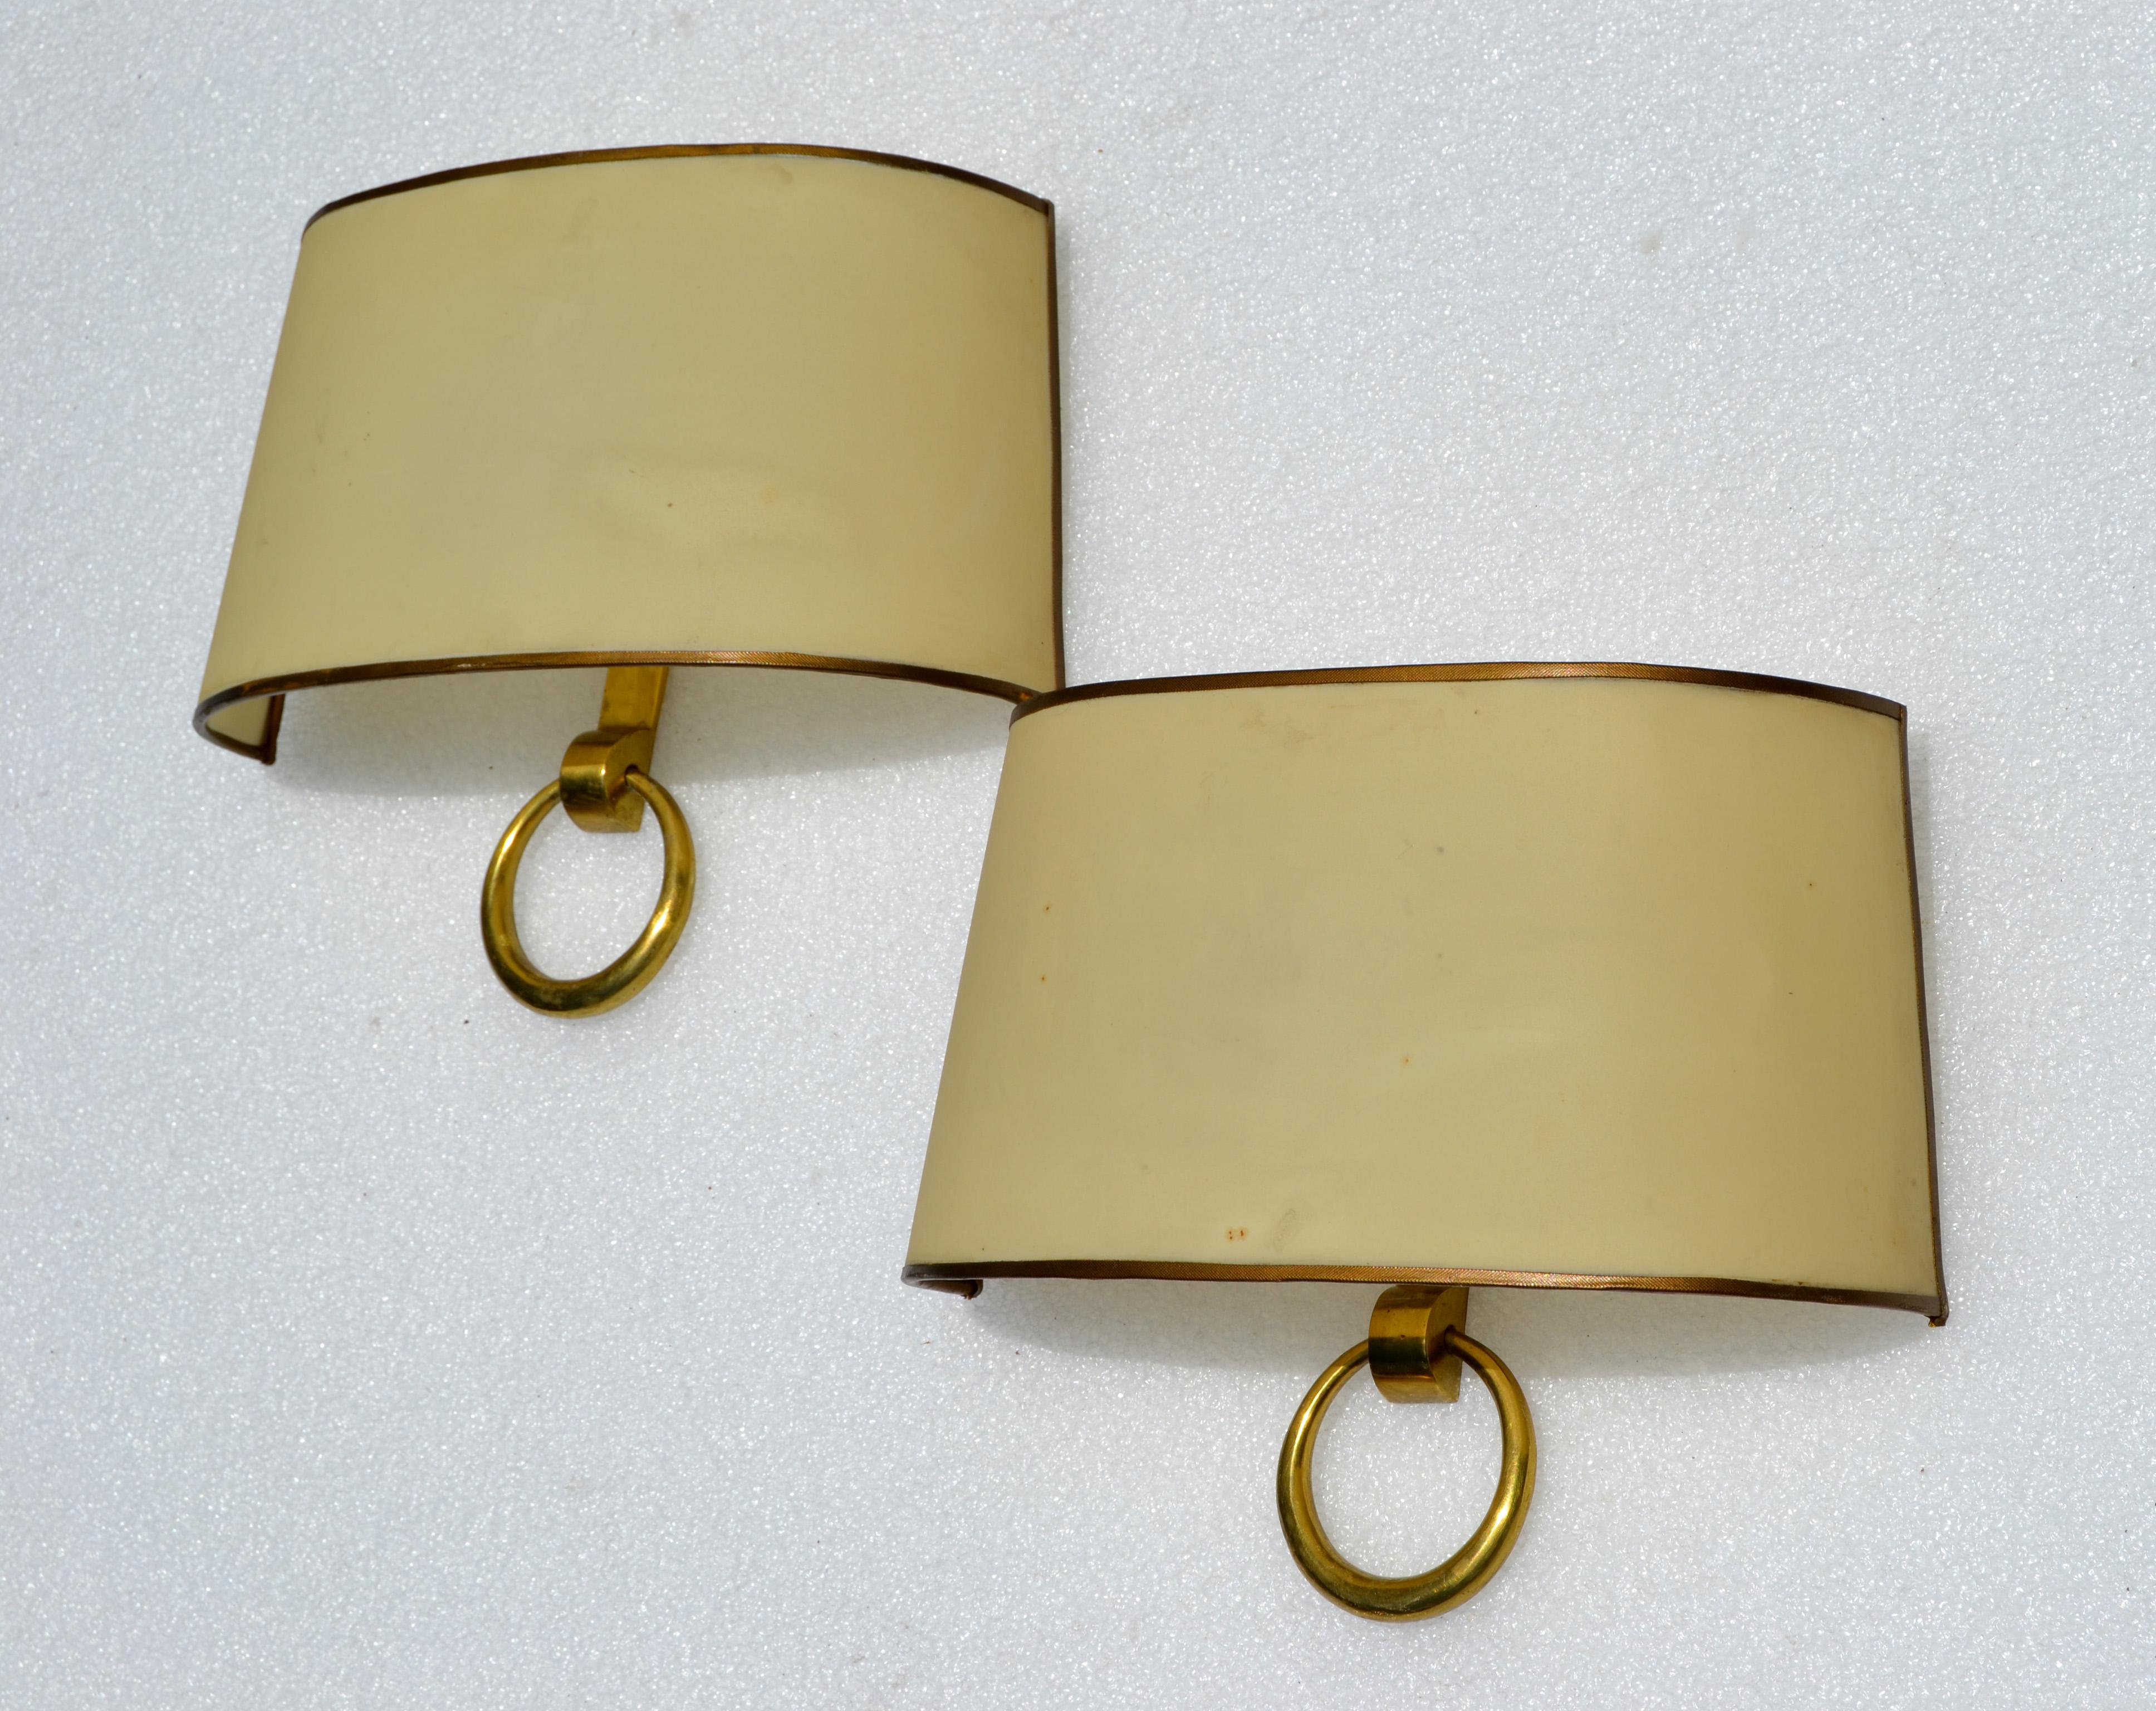 Paire d'appliques en bronze Art Déco de Marcel Guillemard avec demi-ombre d'origine.
Chaque ampoule est compatible avec une ampoule de 40 watts maximum. 
Les deux appliques sont estampillées Bronze, numérotées 30461 et portent le nom du